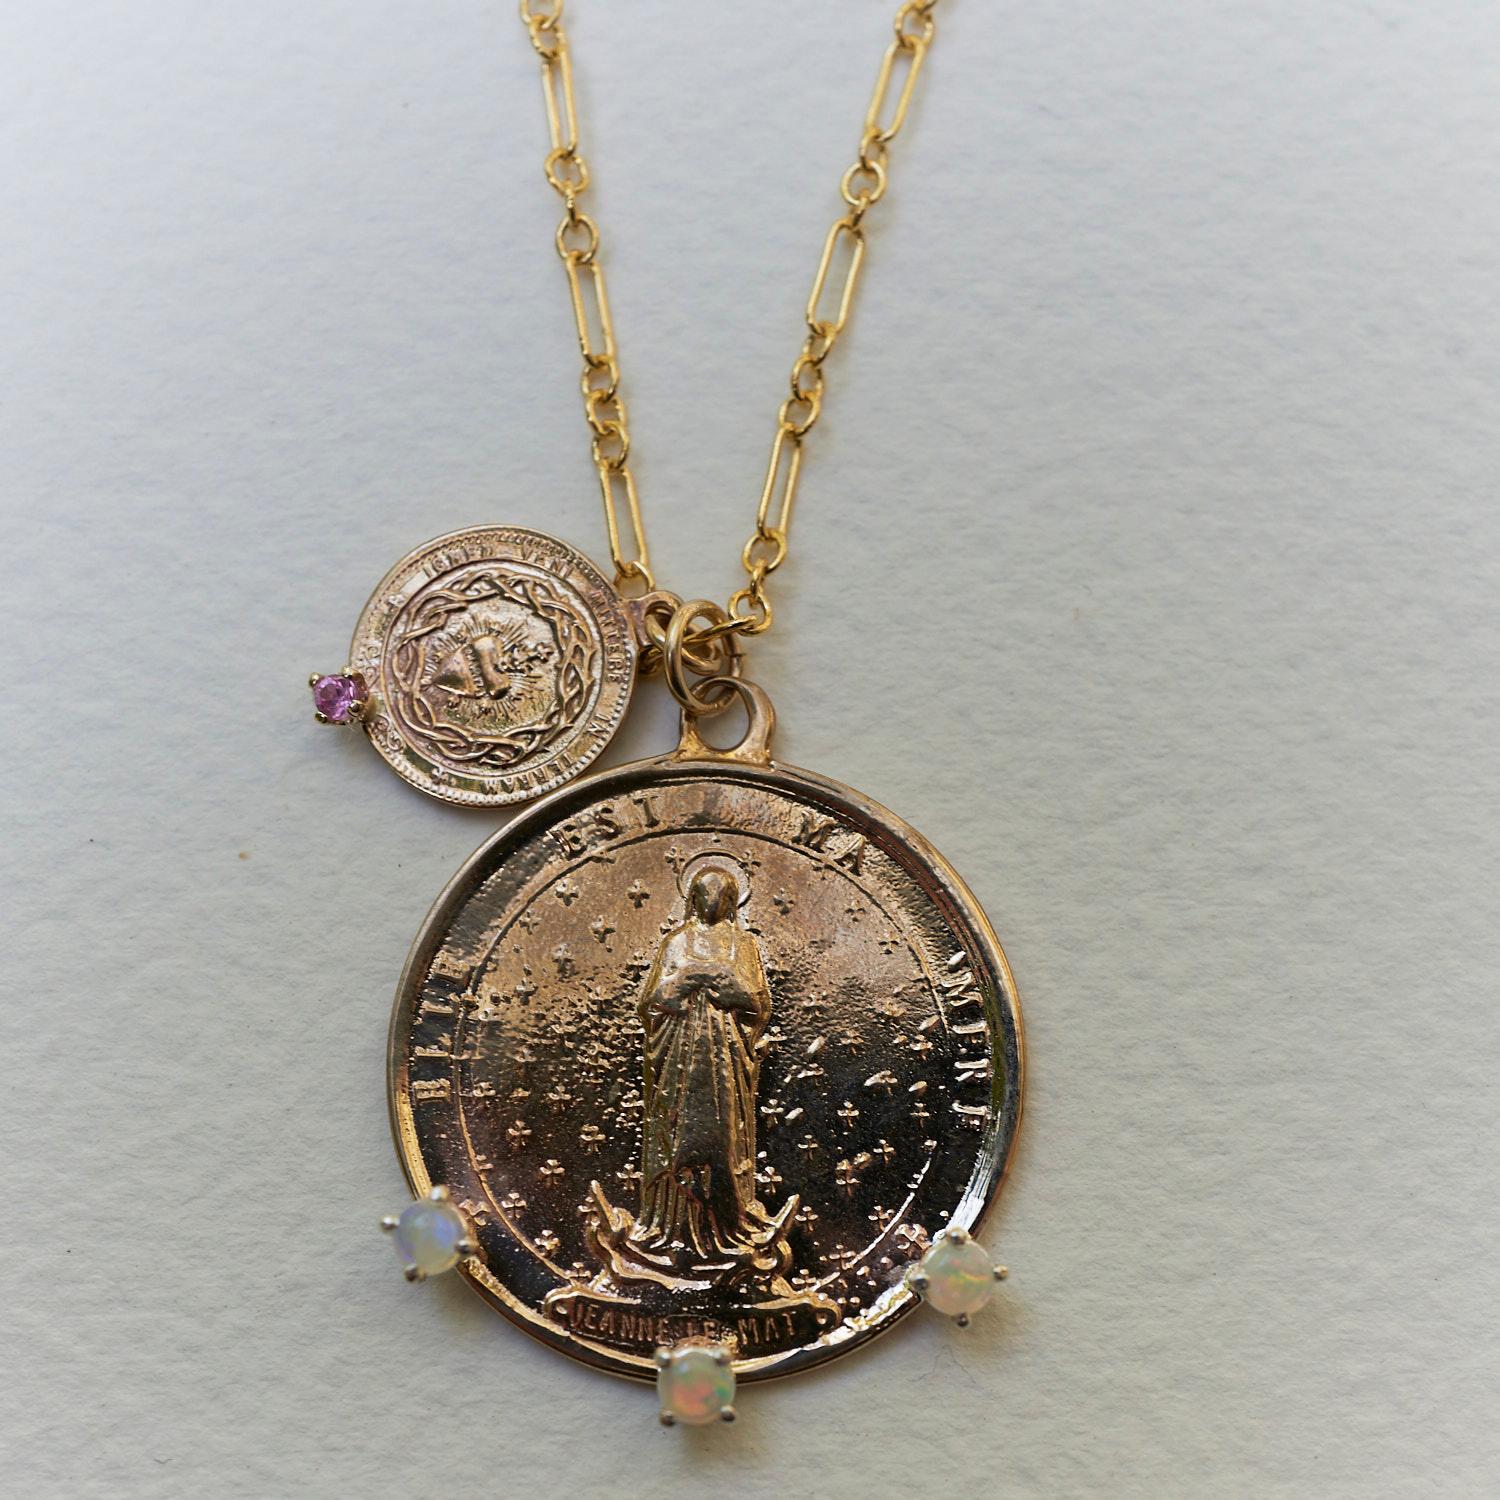 Collier chaîne 3 opales saphir rose Médaille française, une avec un cœur et une avec Jeanne Le Mat 
La chaîne est de 24